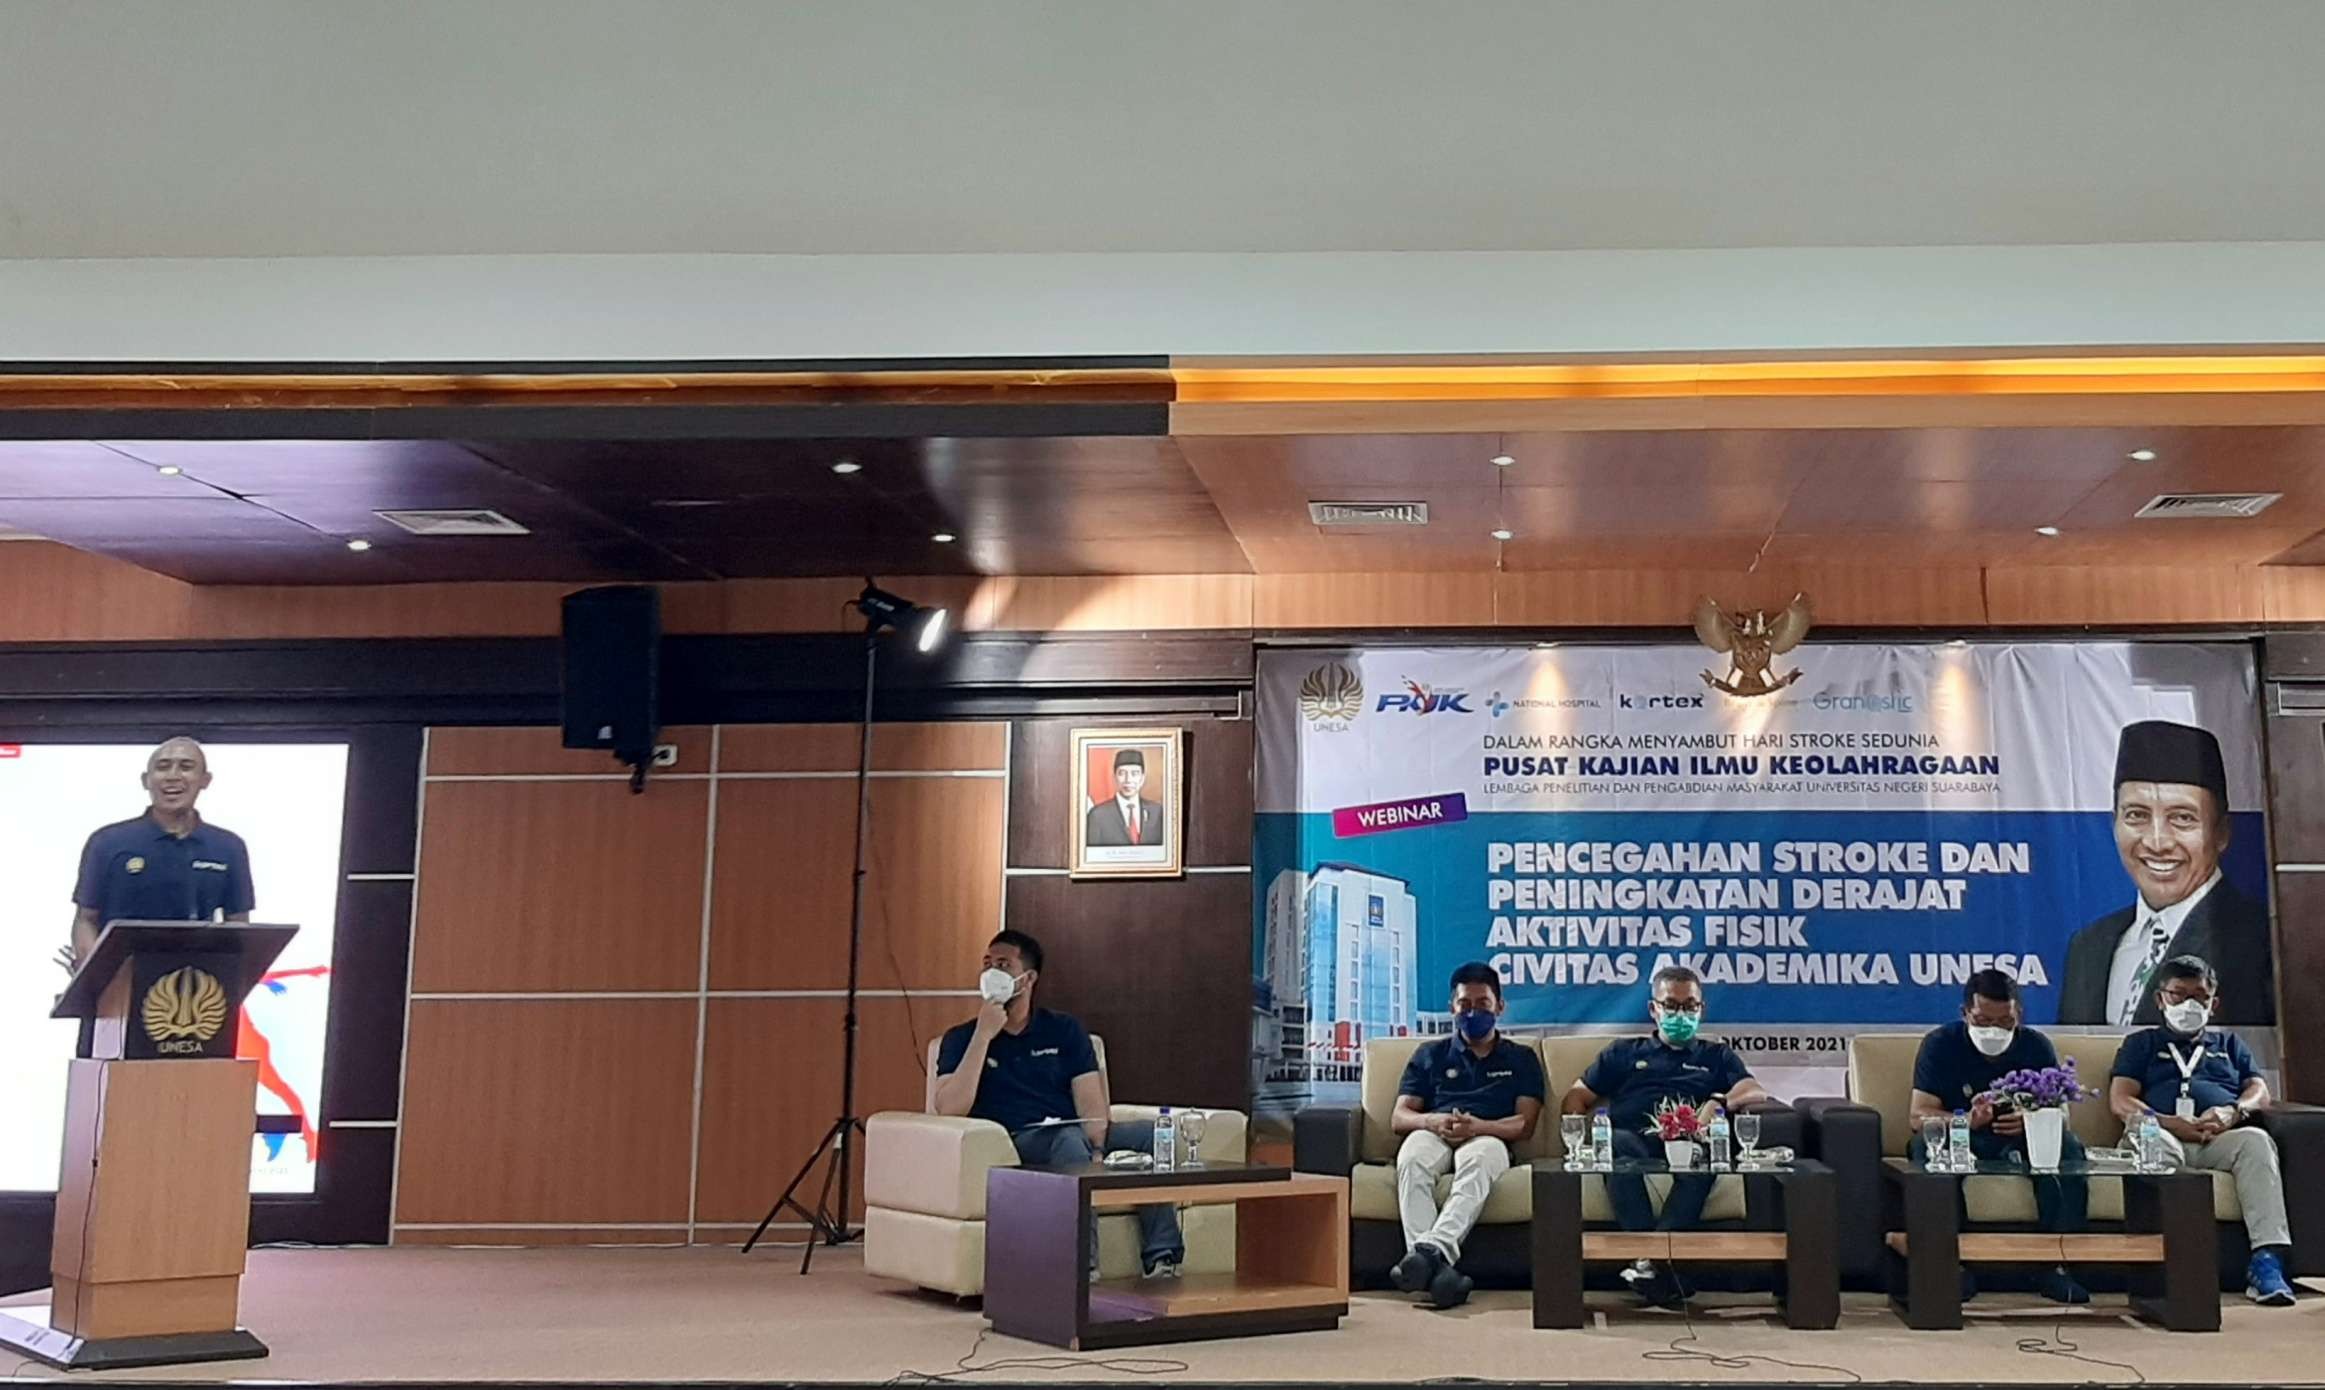 Sekretaris PKIK UNESA, dr Kunjung Ashadi saat menyampaikan materi mengenai kiat melakukan aktivitas fisik untuk pencegahan stroke. (Foto: Pita Sari/Ngopibareng.id)